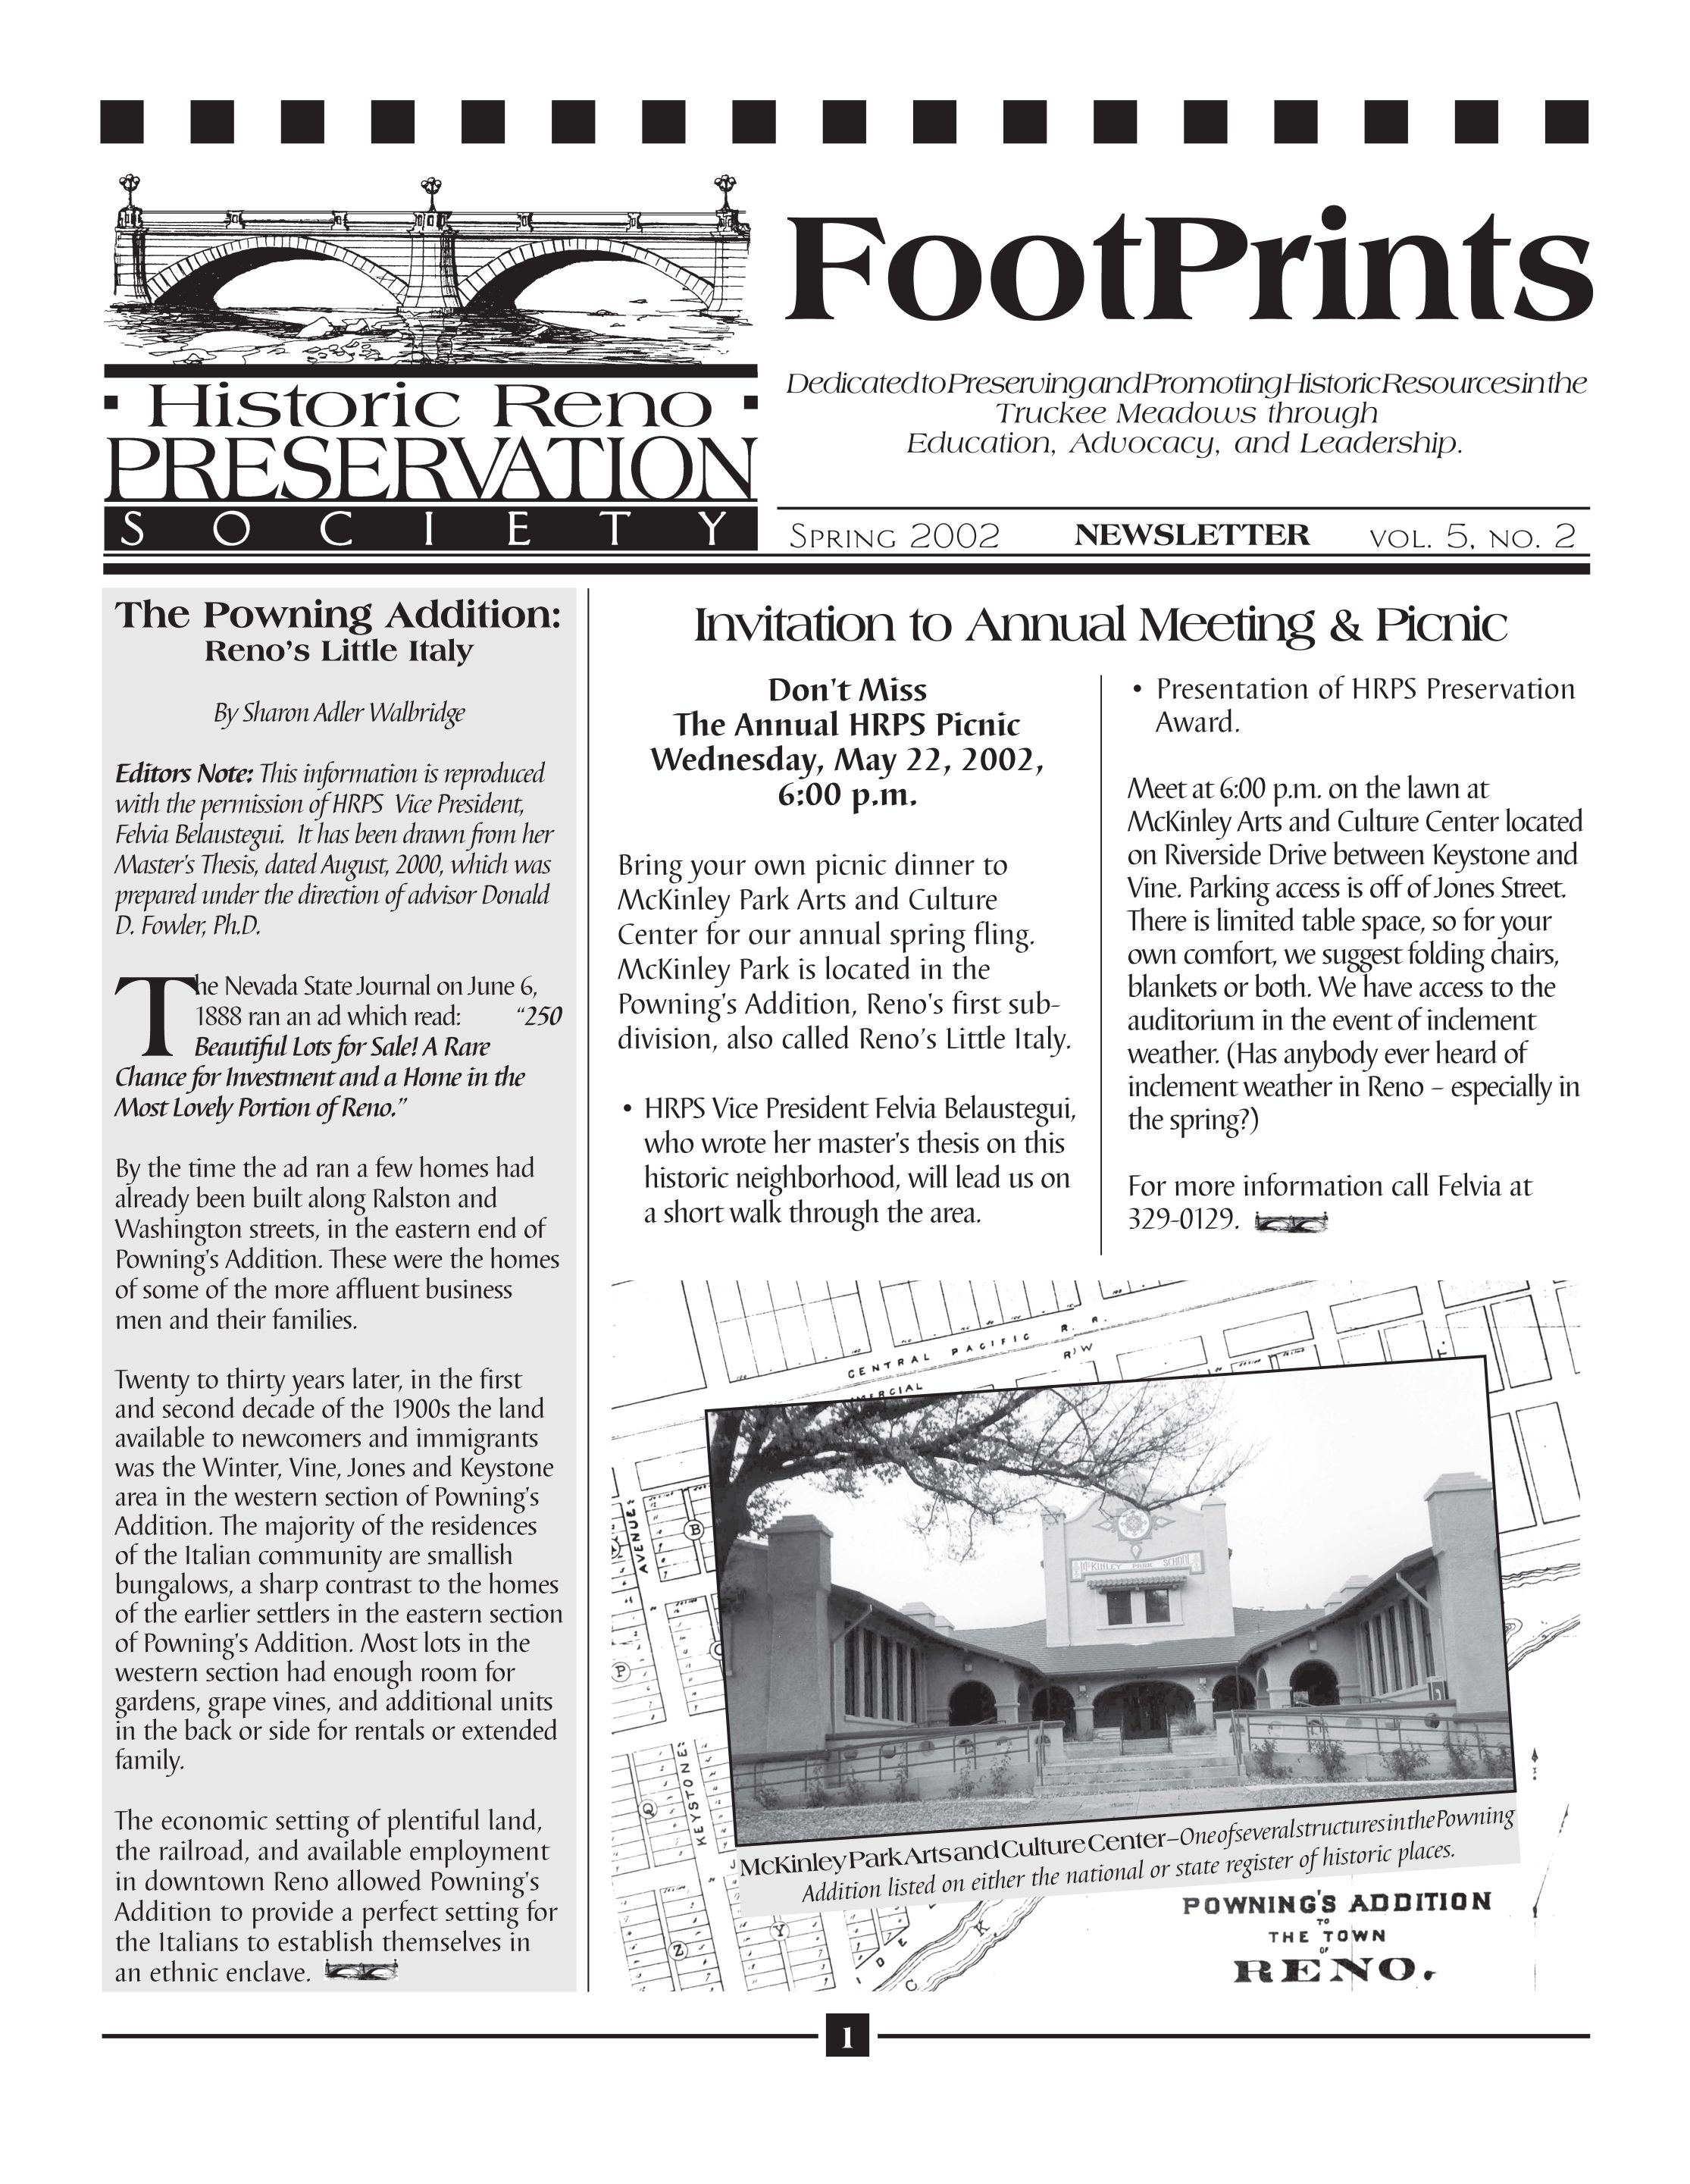 FootPrints Volume 5, Number 2, Spring 2002